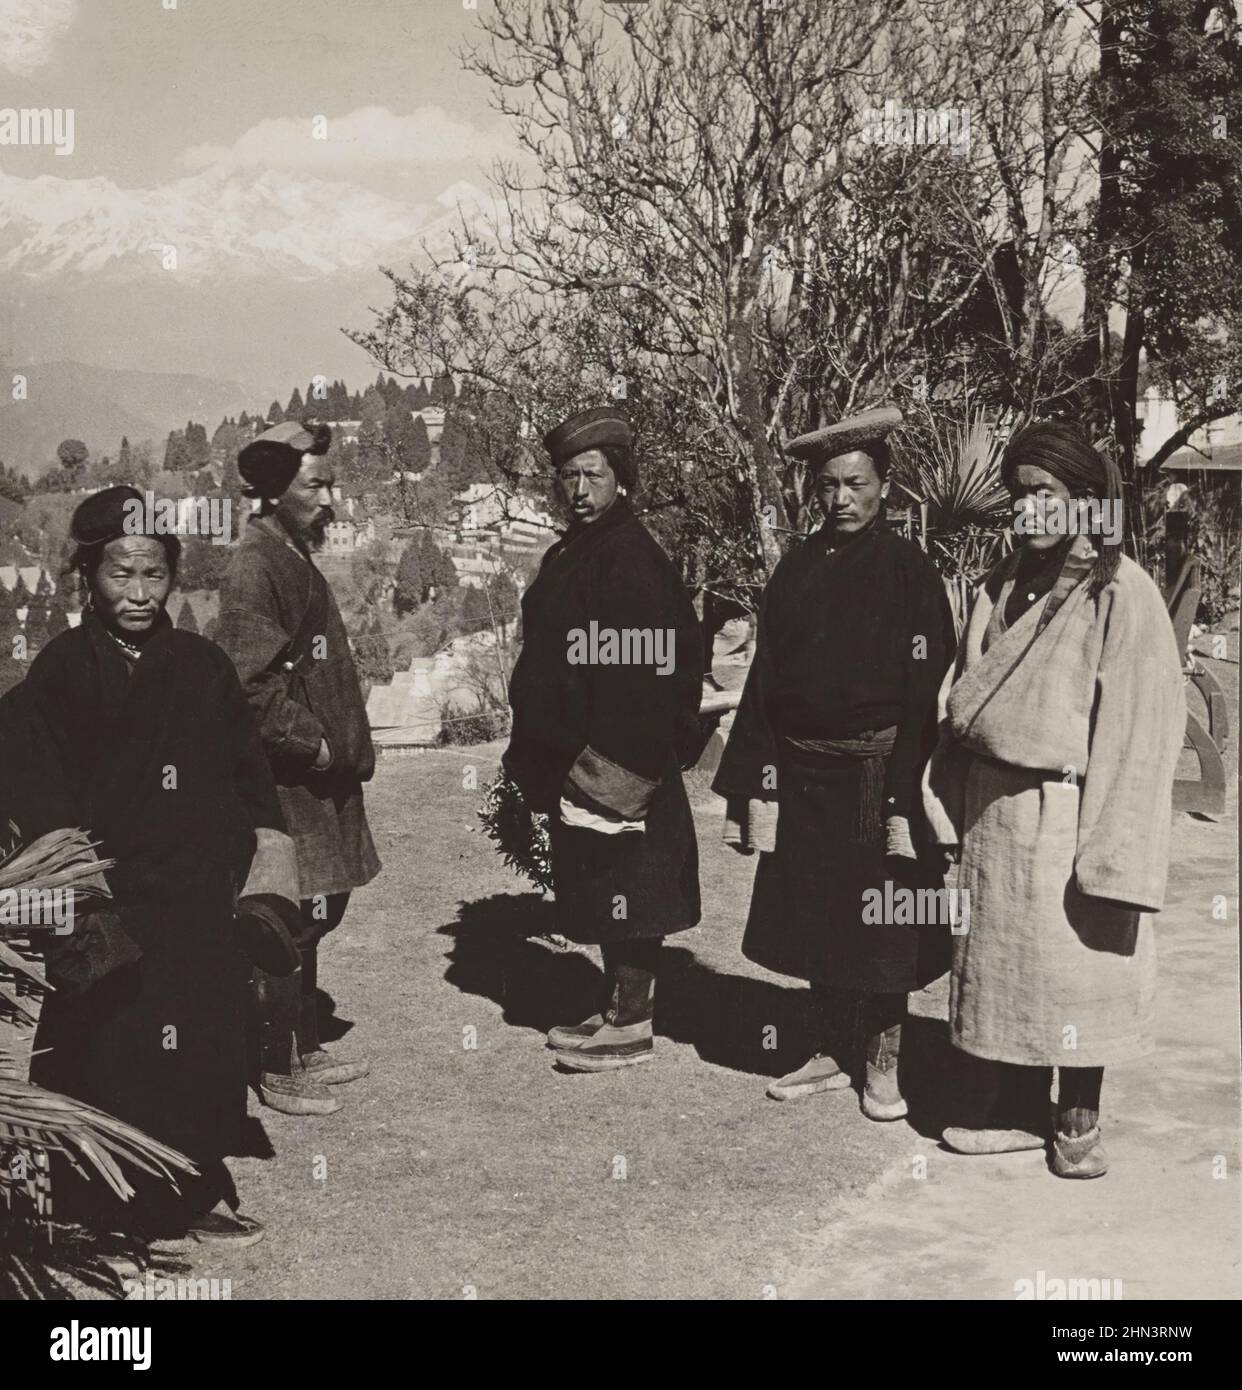 Foto vintage de campesinos nepaleses vestidos tradicionales de la tierra del Tíbet, Darjeeling, India. 1907 Foto de stock